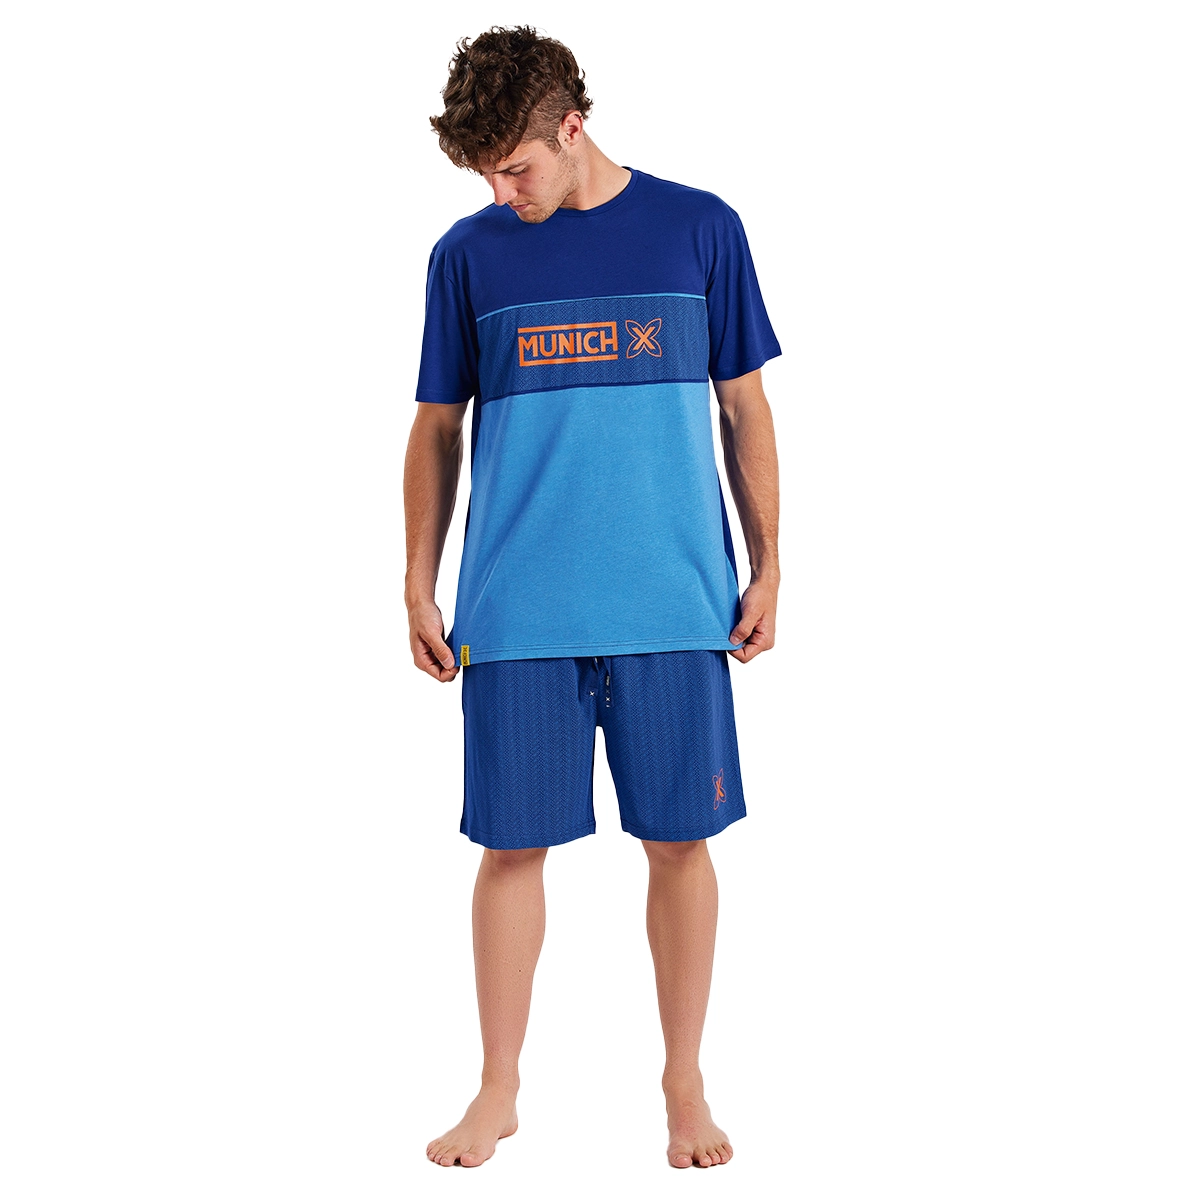 Pijama de manga corta y cuello redondo Munich MUEH0254 hombre Talla: XL Color: Azul MUEH0254.XL